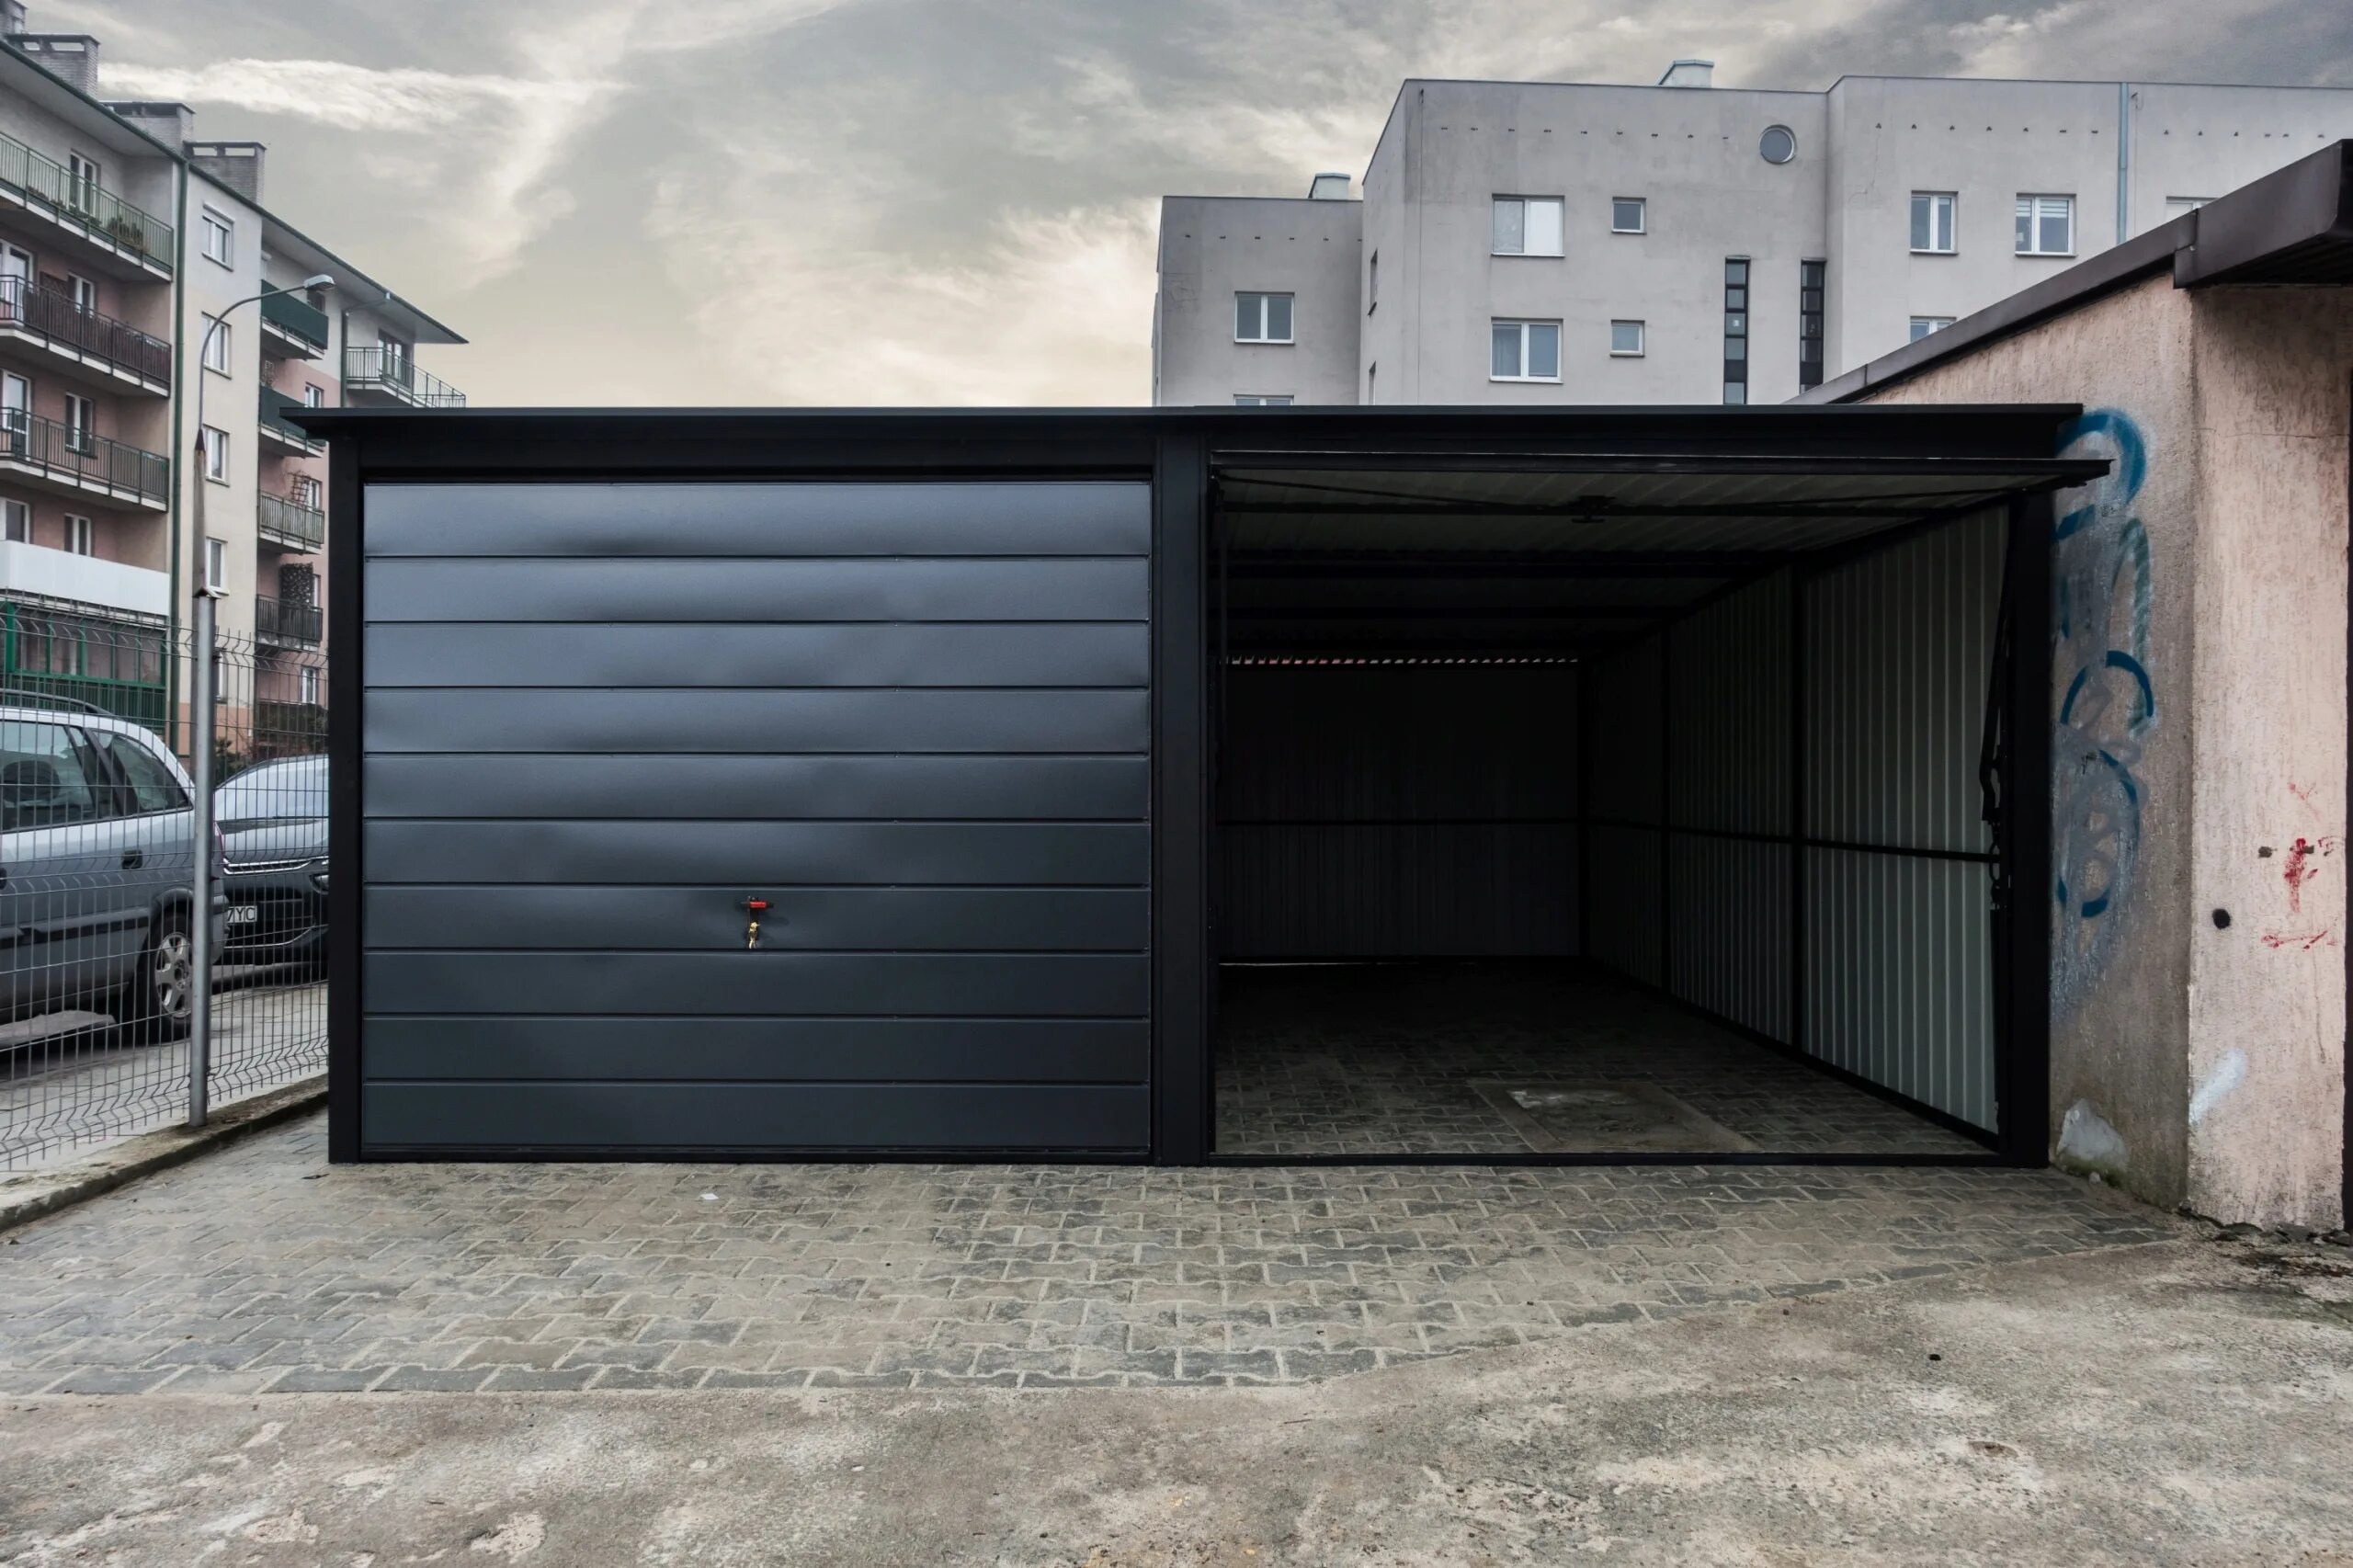 Гараж мет. Металлический гараж сборный 6м 4м драйв2. Металлоконструкция гаража. Черный металлический гараж. Широкий гараж.